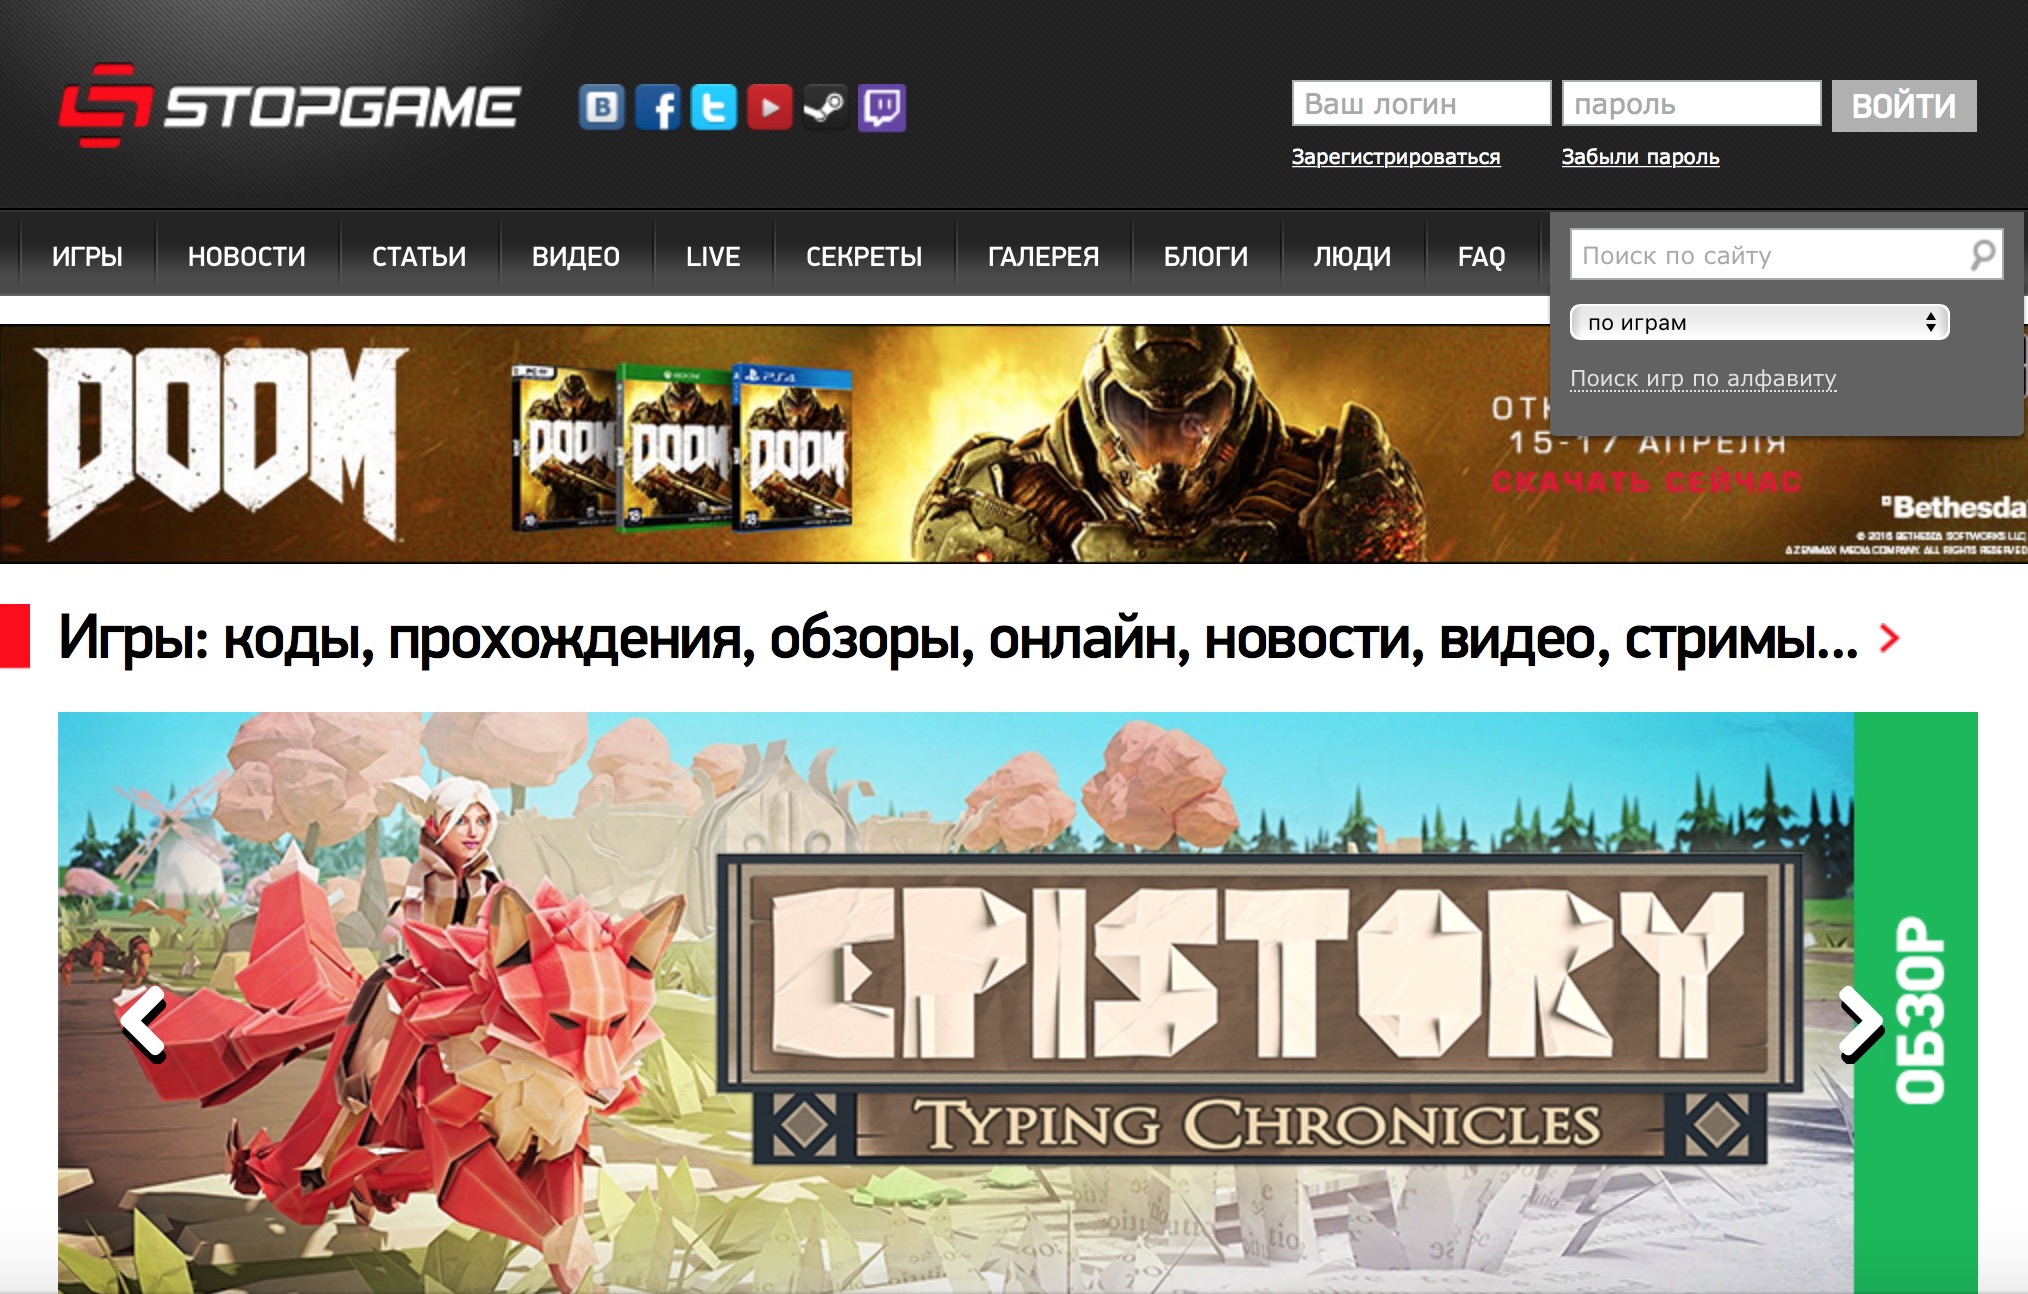 StopGame.ru — лучший игровой портал